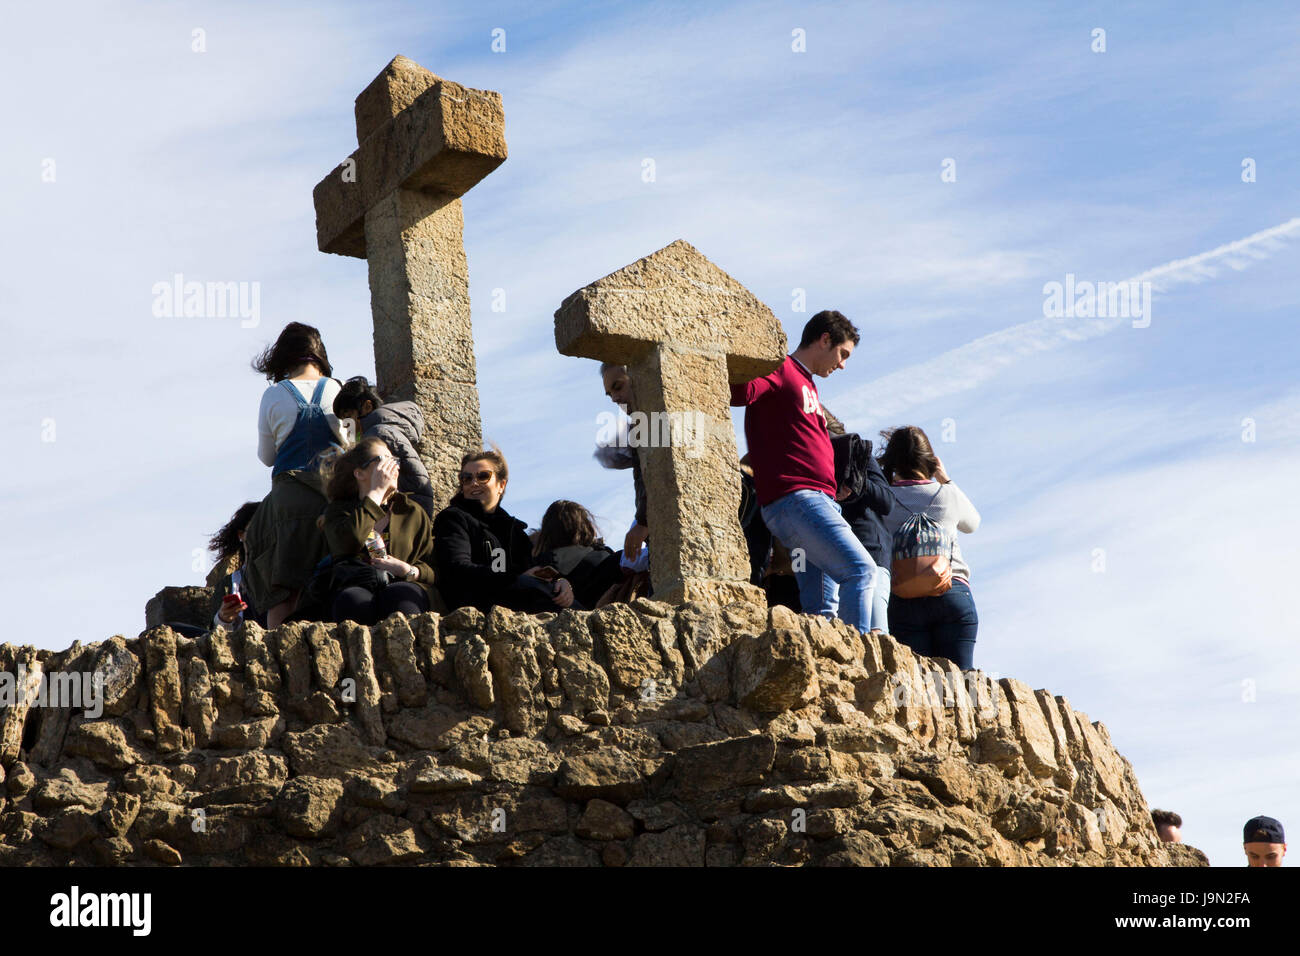 Ein steinernes Kreuz & Pfeil markiert den Höhepunkt der Park Güell, einem weitläufigen öffentlichen Park der Gärten & architektonische Elemente von Gaudi in Barcelona entworfen. Stockfoto